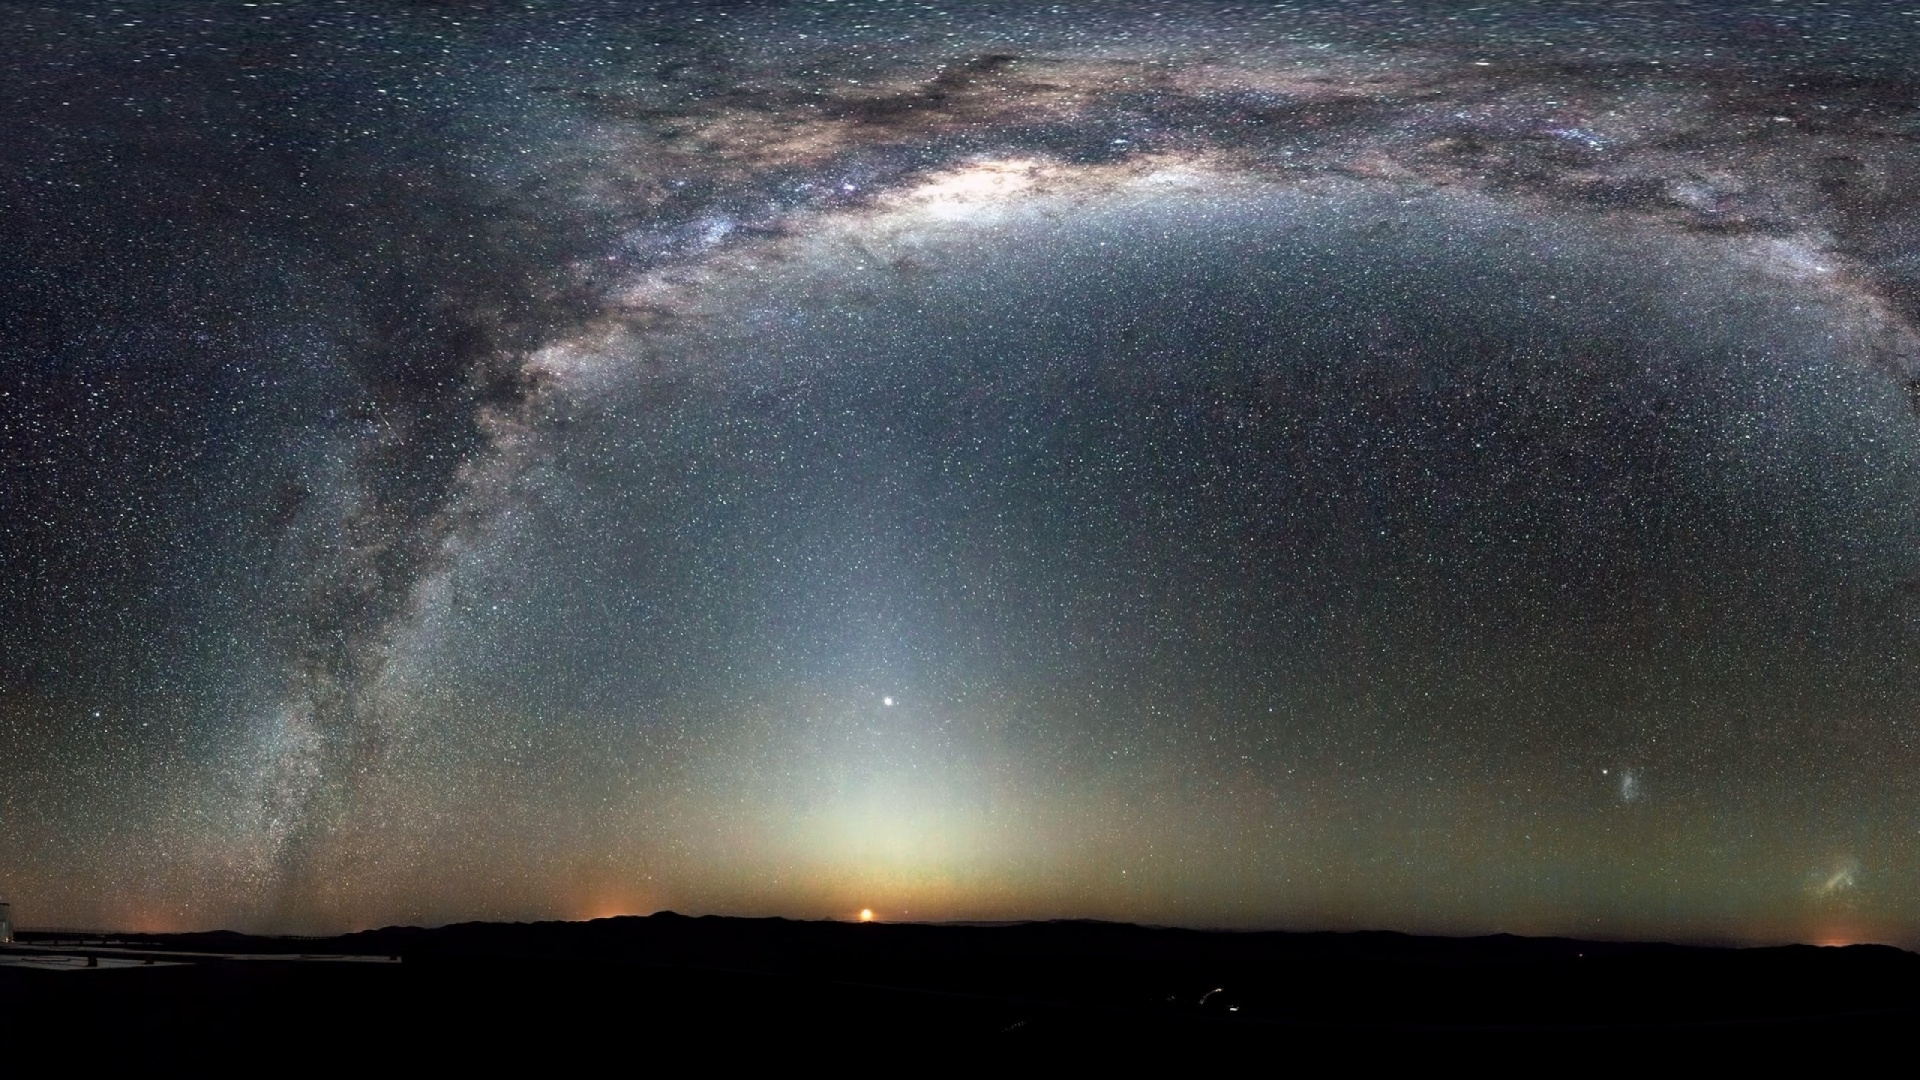 Млечный путь фото галактики из космоса